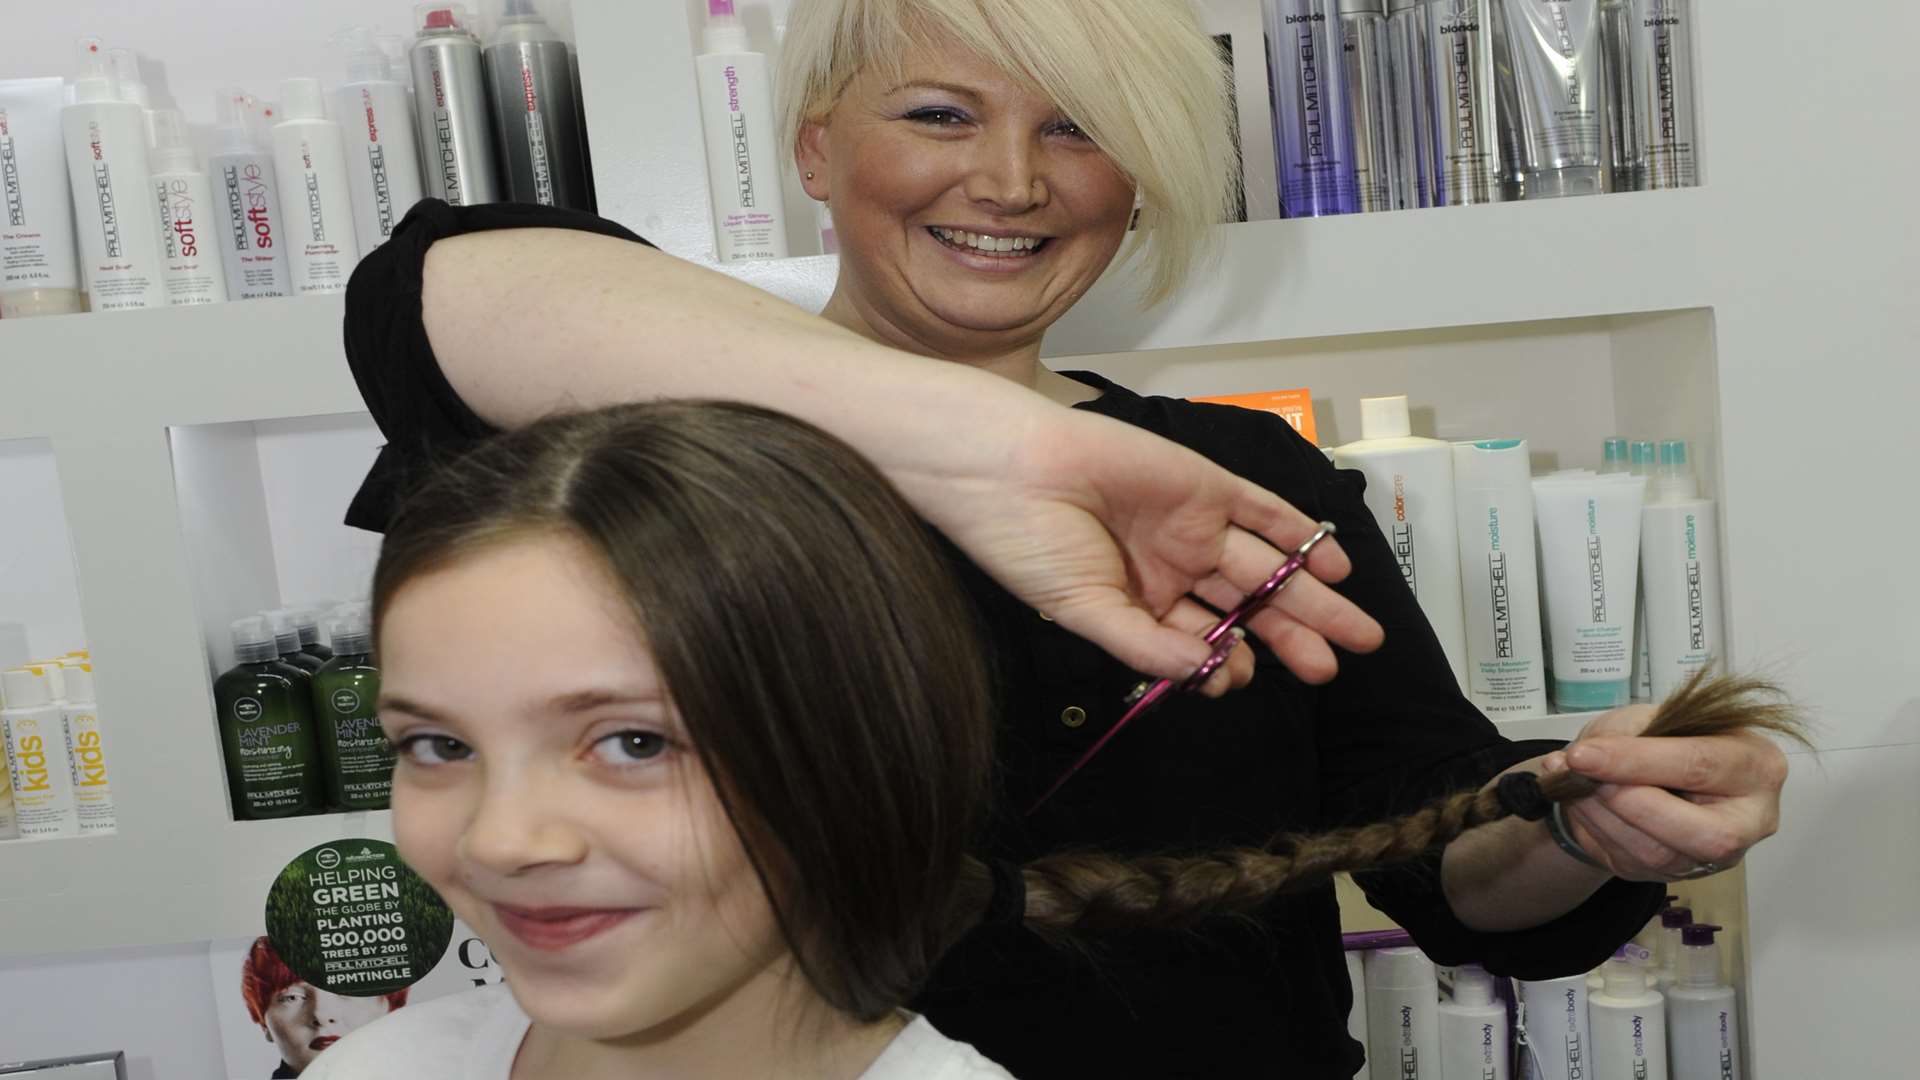 Obsessions Hair, York Street, Ramsgate. Eight-year-old Faith Cunningham has her hair cut for charity. Nicola Clark makes a start cutting Faith's hair